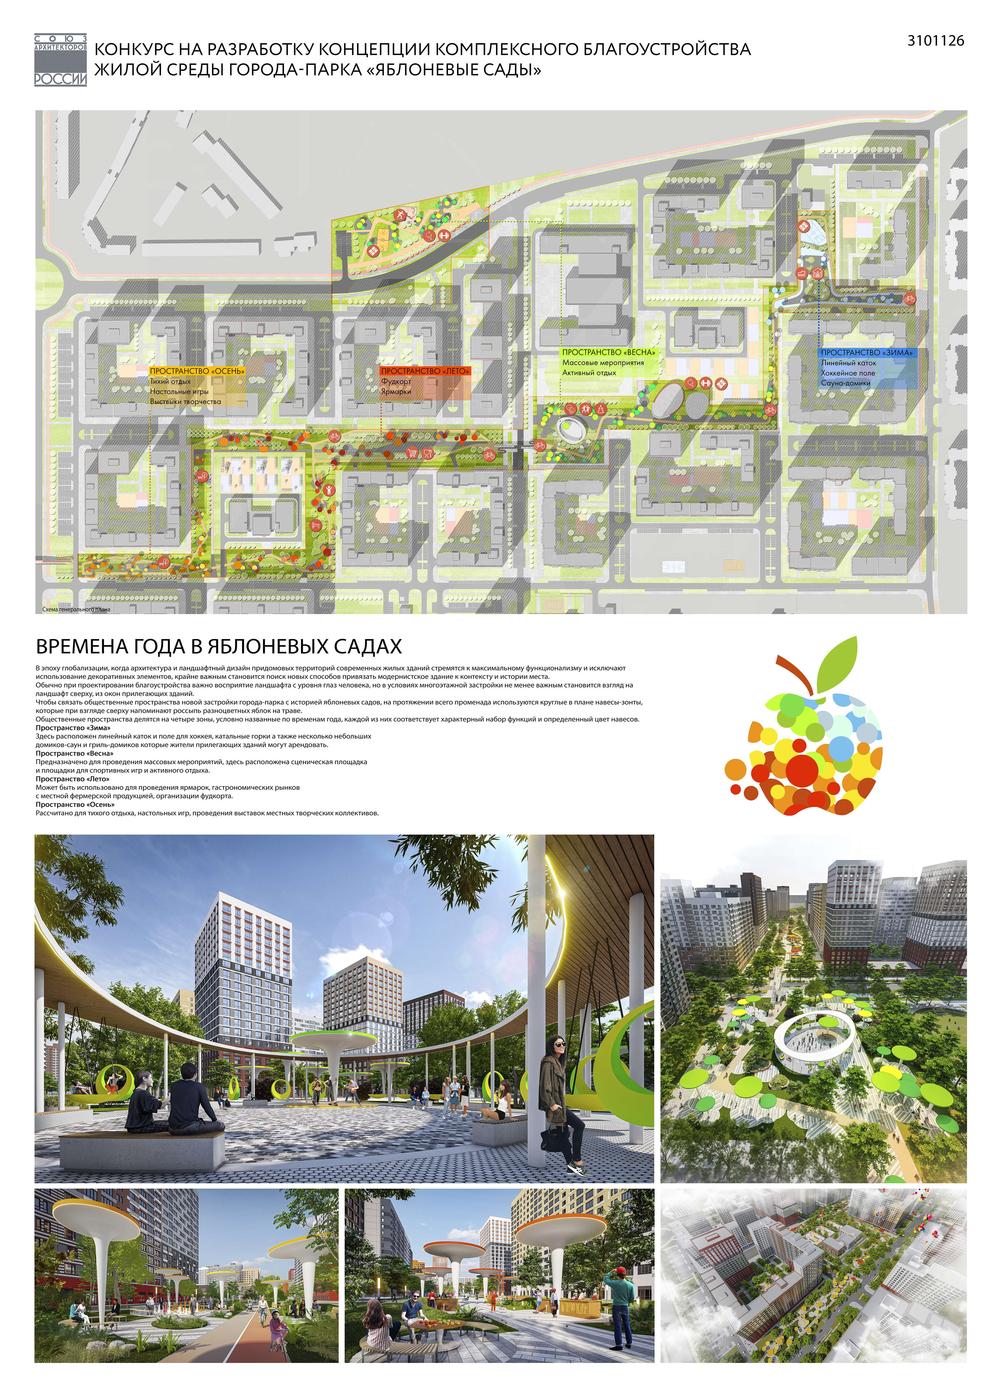 Начинается прием заявок на участие в открытом конкурсе ландшафтного дизайна «Город-Сад»